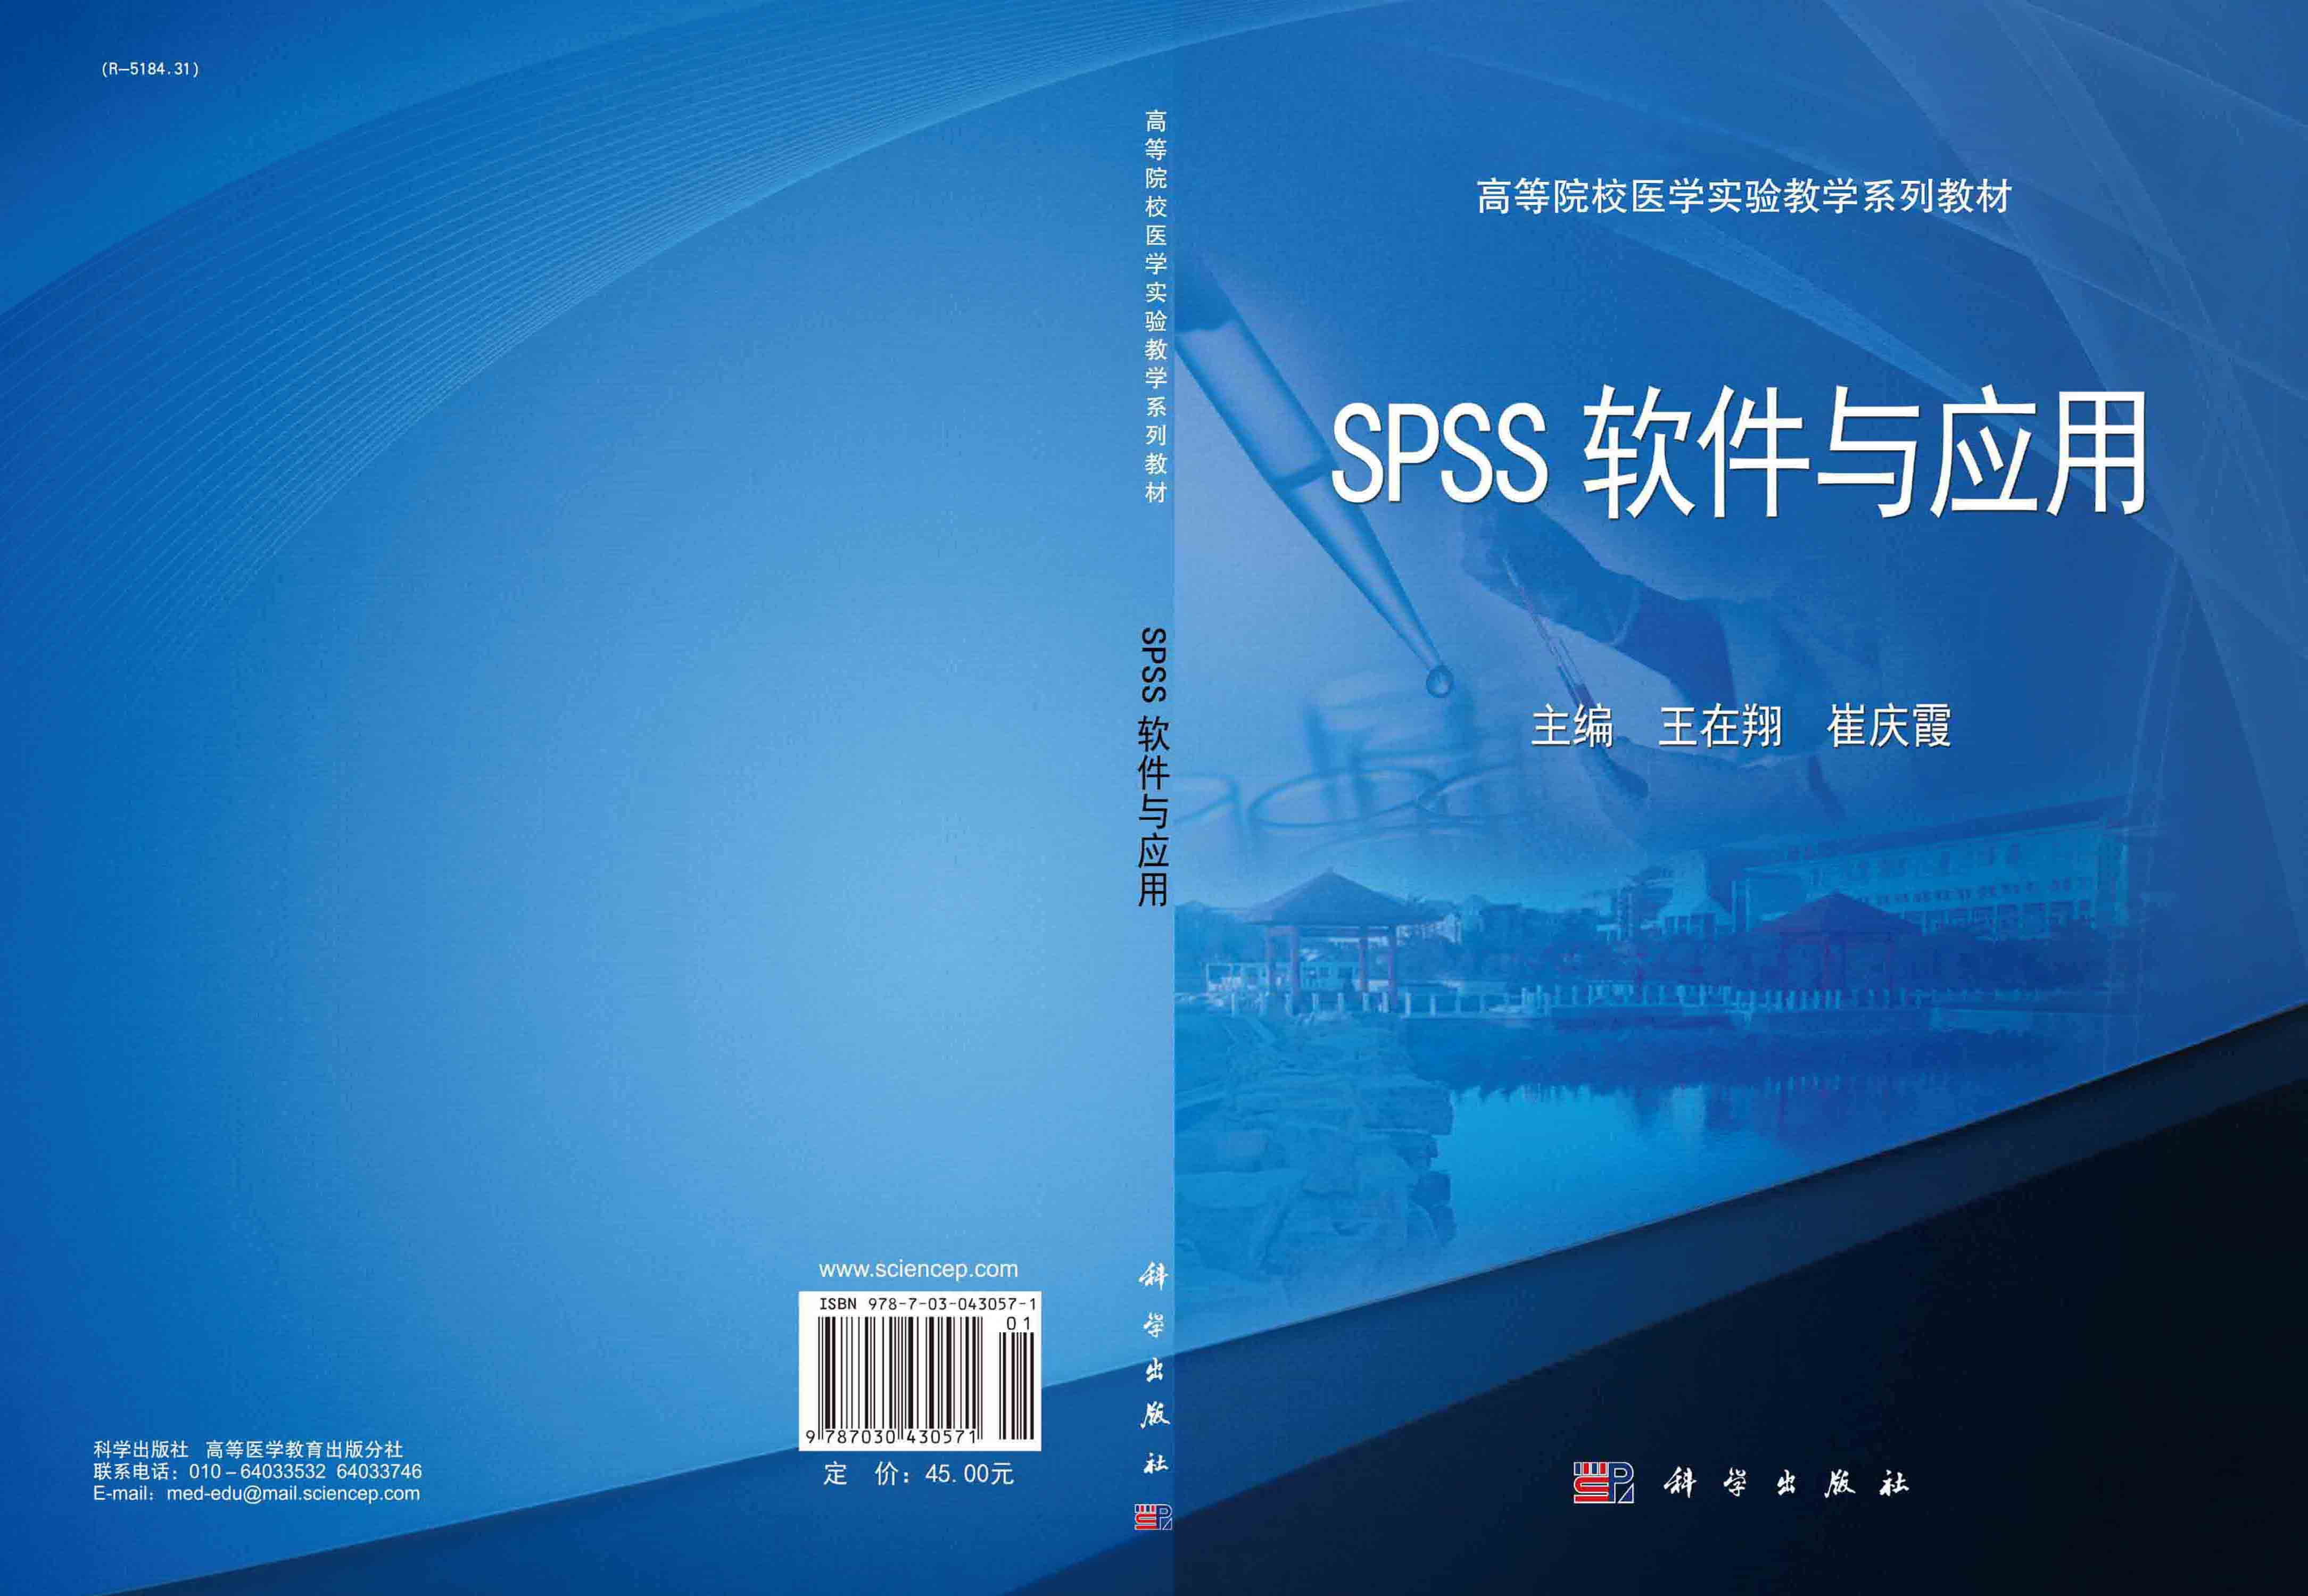 SPSS软件与应用